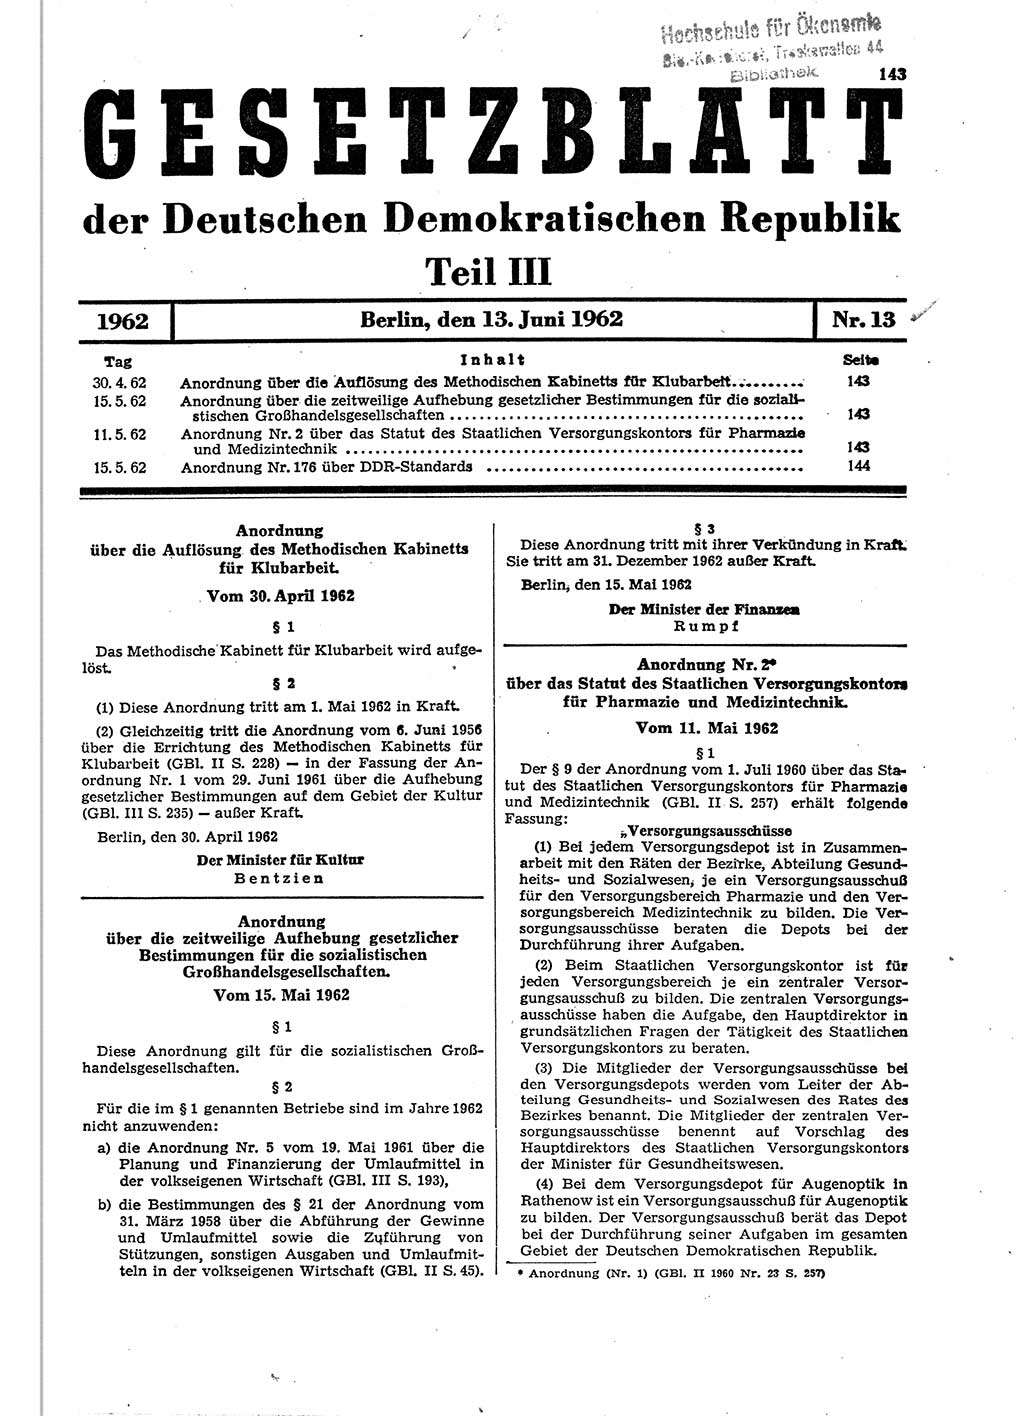 Gesetzblatt (GBl.) der Deutschen Demokratischen Republik (DDR) Teil ⅠⅠⅠ 1962, Seite 143 (GBl. DDR ⅠⅠⅠ 1962, S. 143)